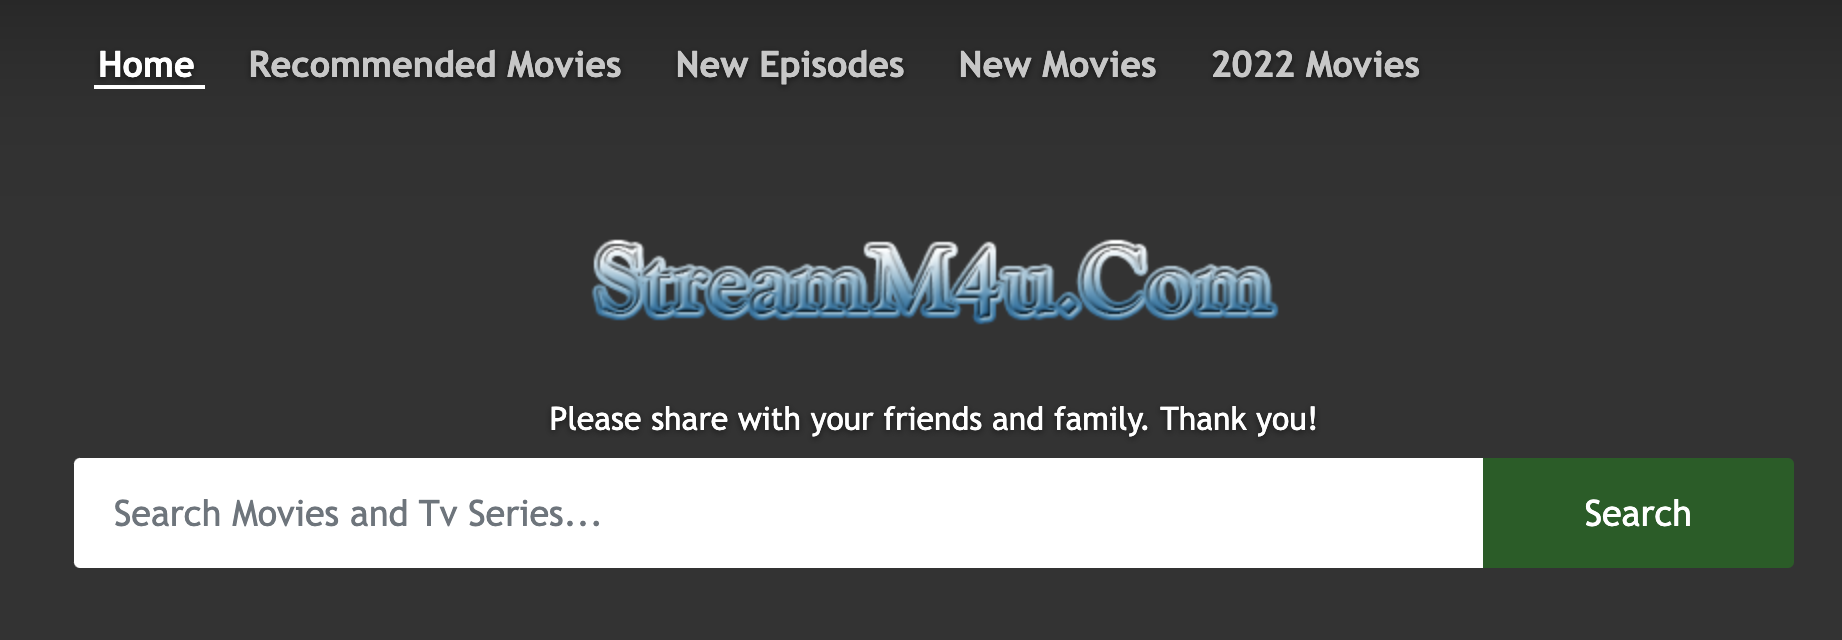 streamM4U - bezpłatne strony do strumieniowego przesyłania filmów online